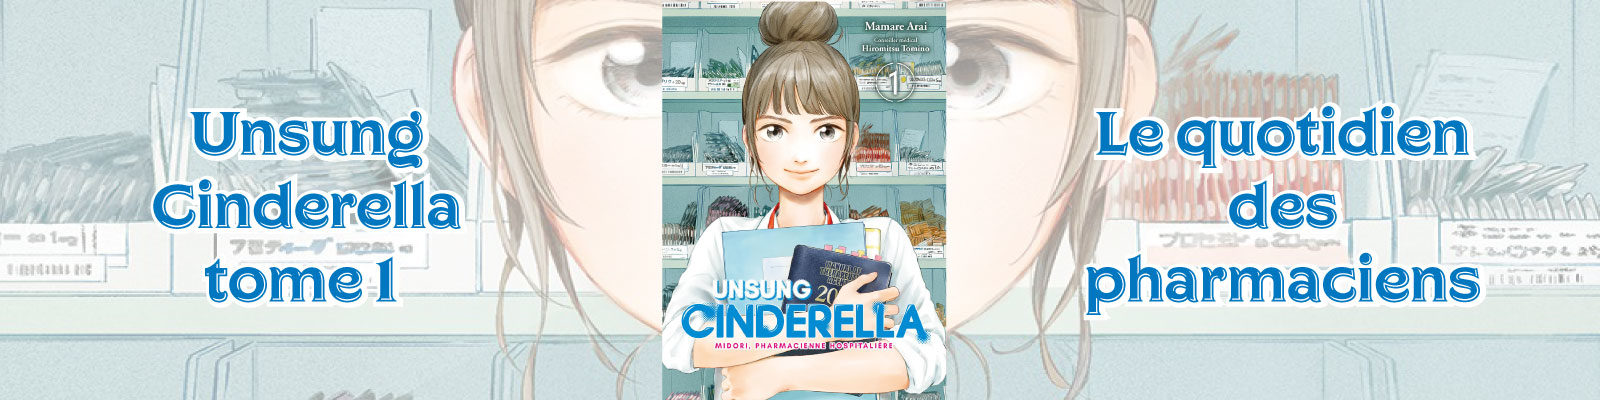 Unsung Cinderella